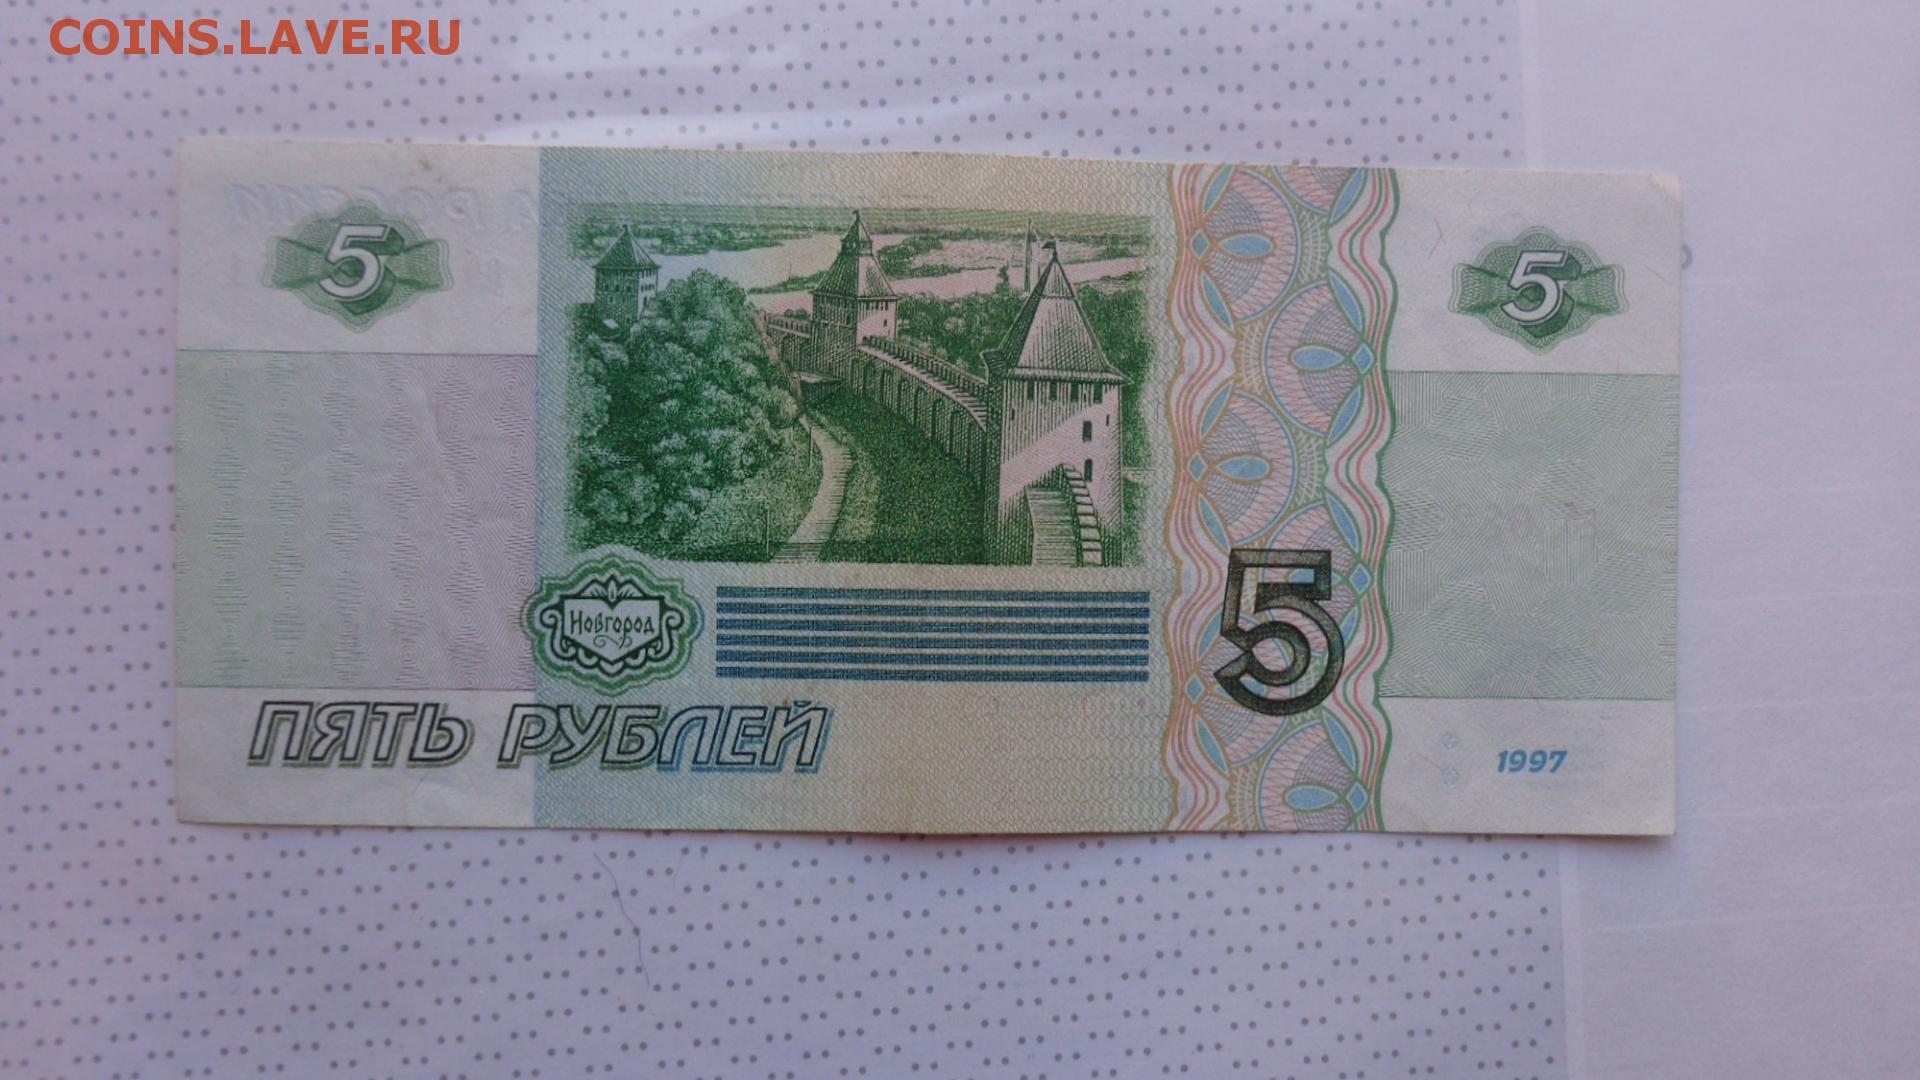 5 рублей зеленые. 5 Рублей 1997. Купюра 5 рублей 1997. Номинал 5 рублей бумажные. 5 Рублевая купюра бумажная.